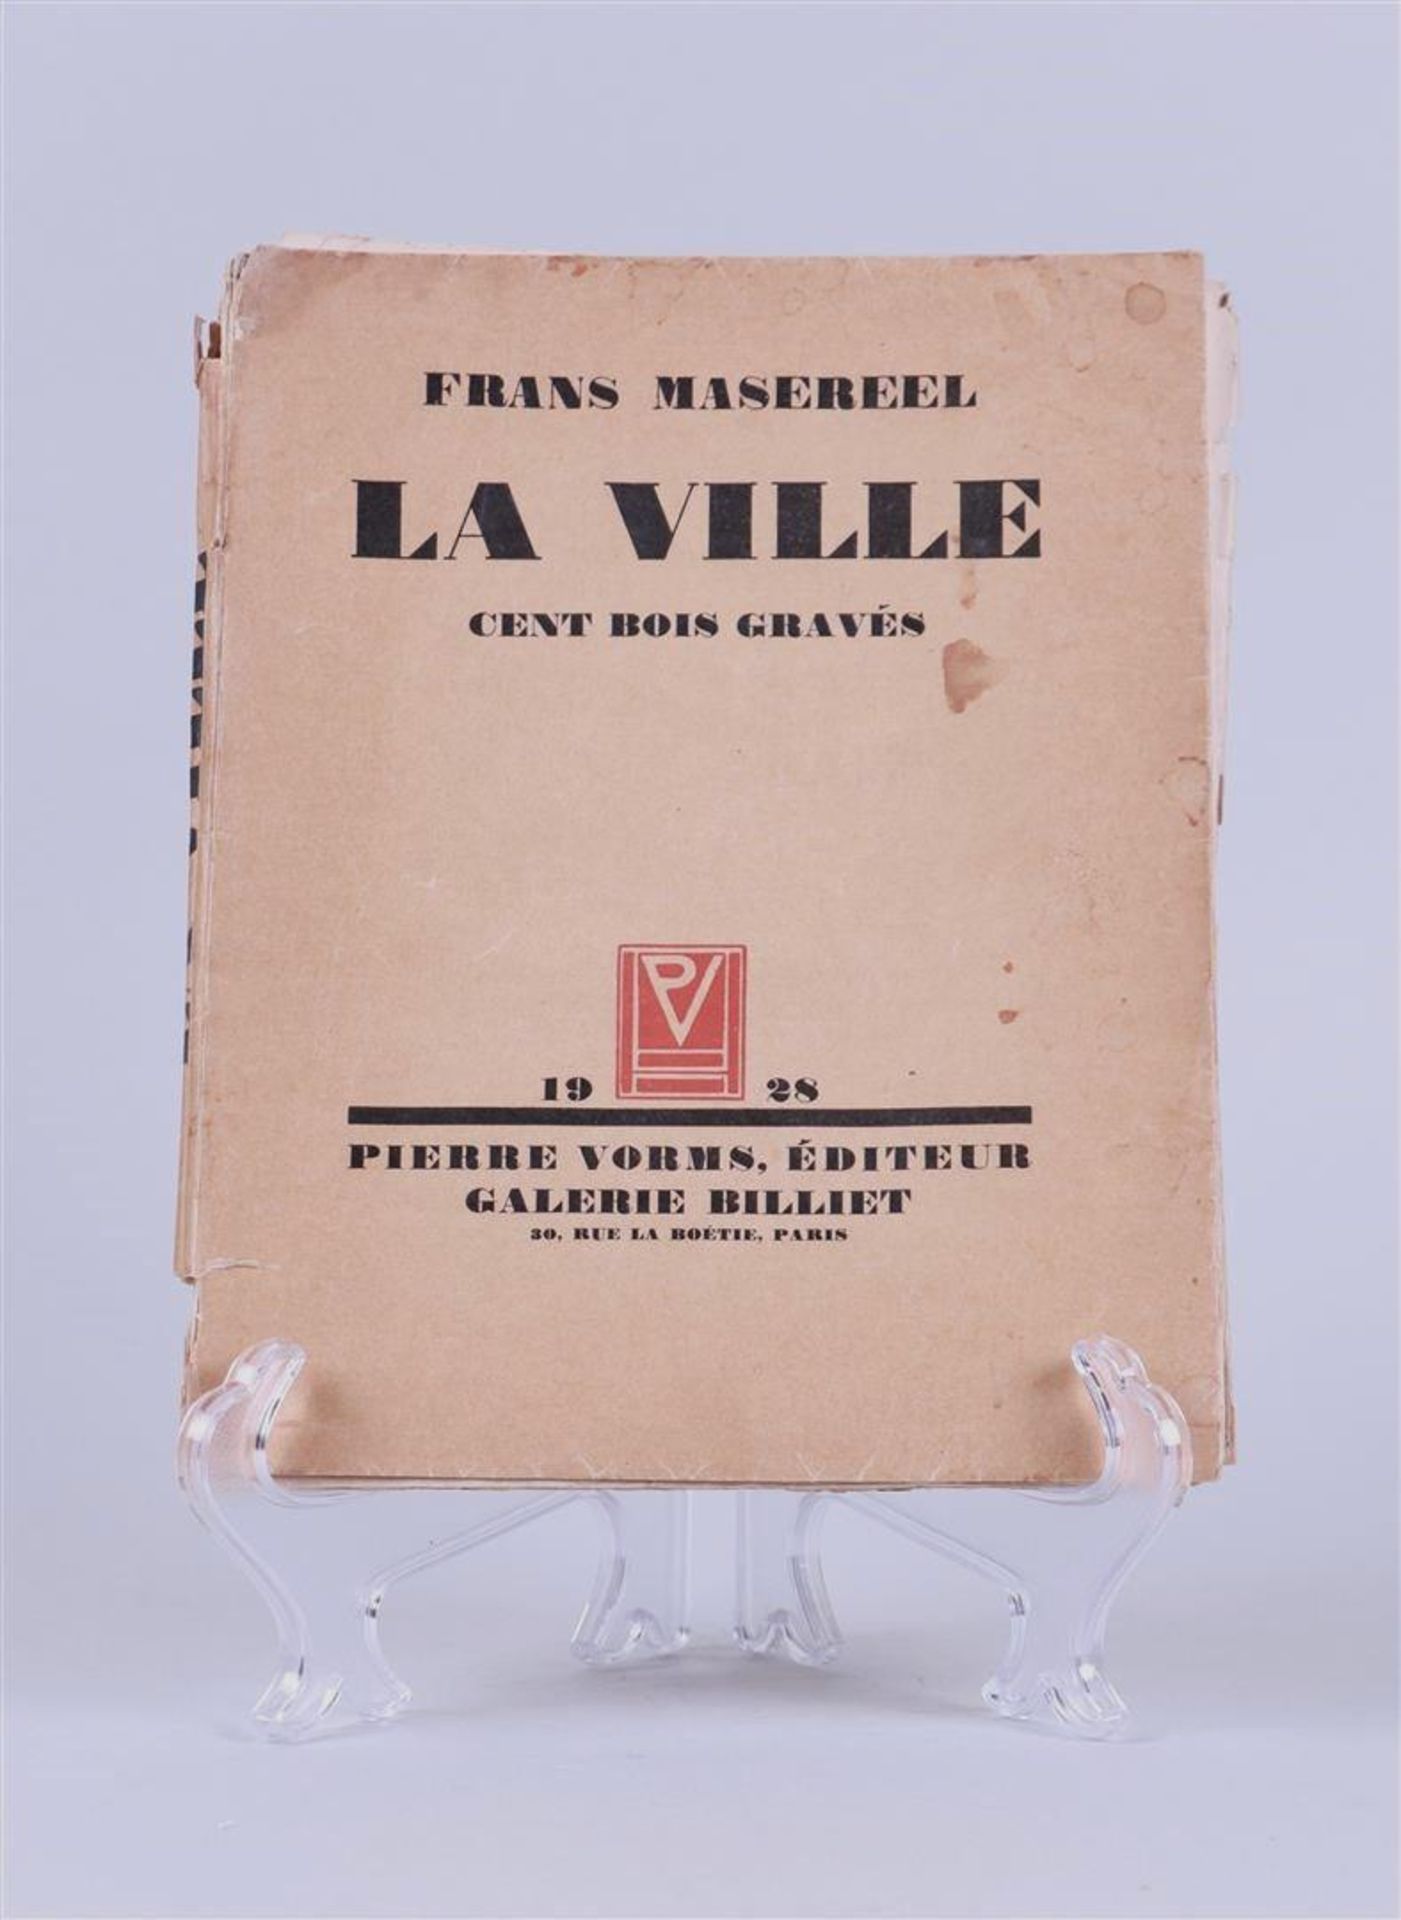 Frans Masereel, "La Ville" cent bois gravés, 1928, published Pierre Vorms, Galerie Billiet, Paris.